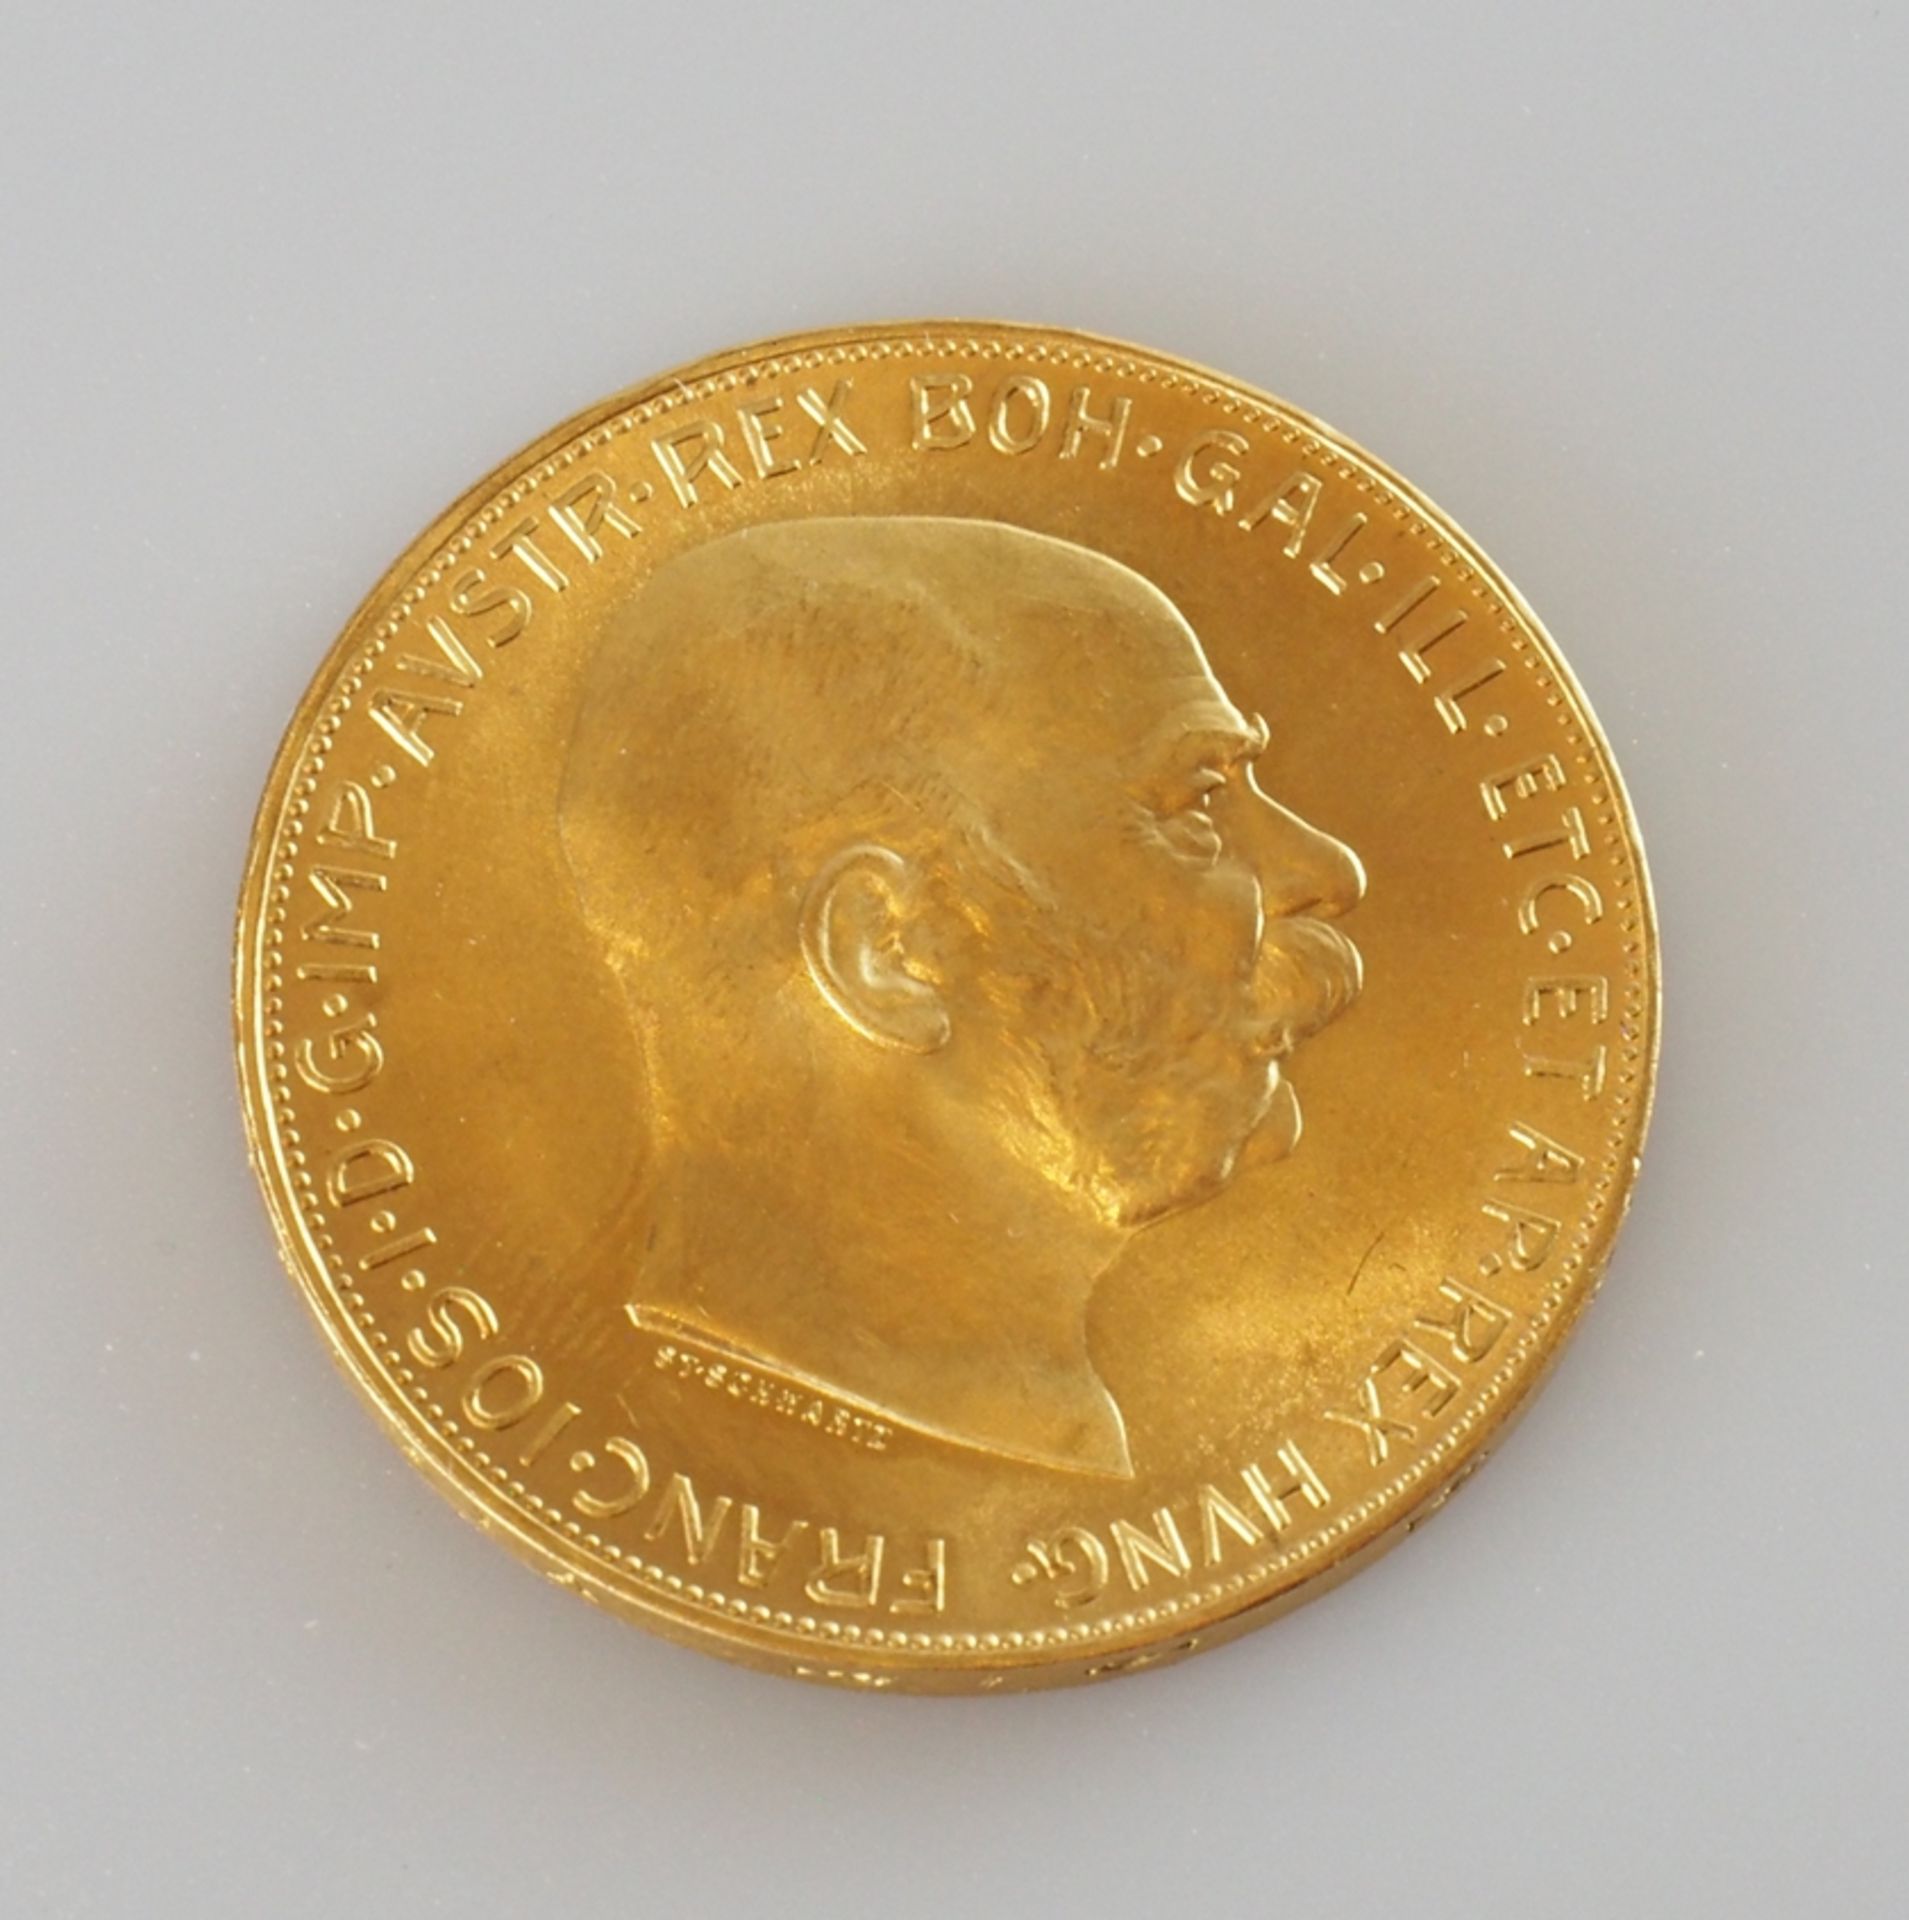 Goldmünze Österreich. 100 Kronen 1915